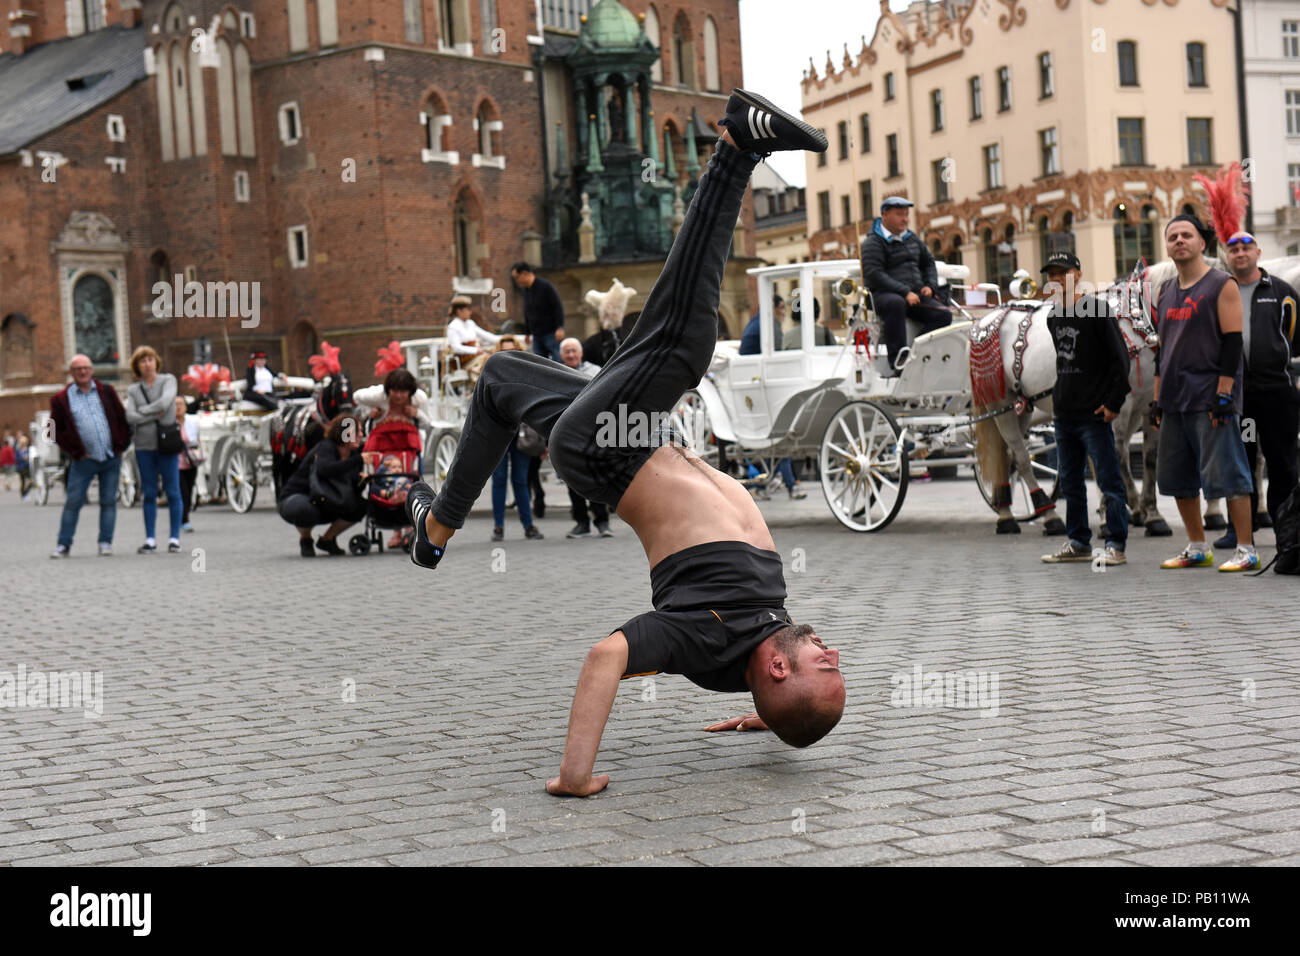 Prerformers danseurs de rue en face de la calèche à Cracovie Pologne Banque D'Images